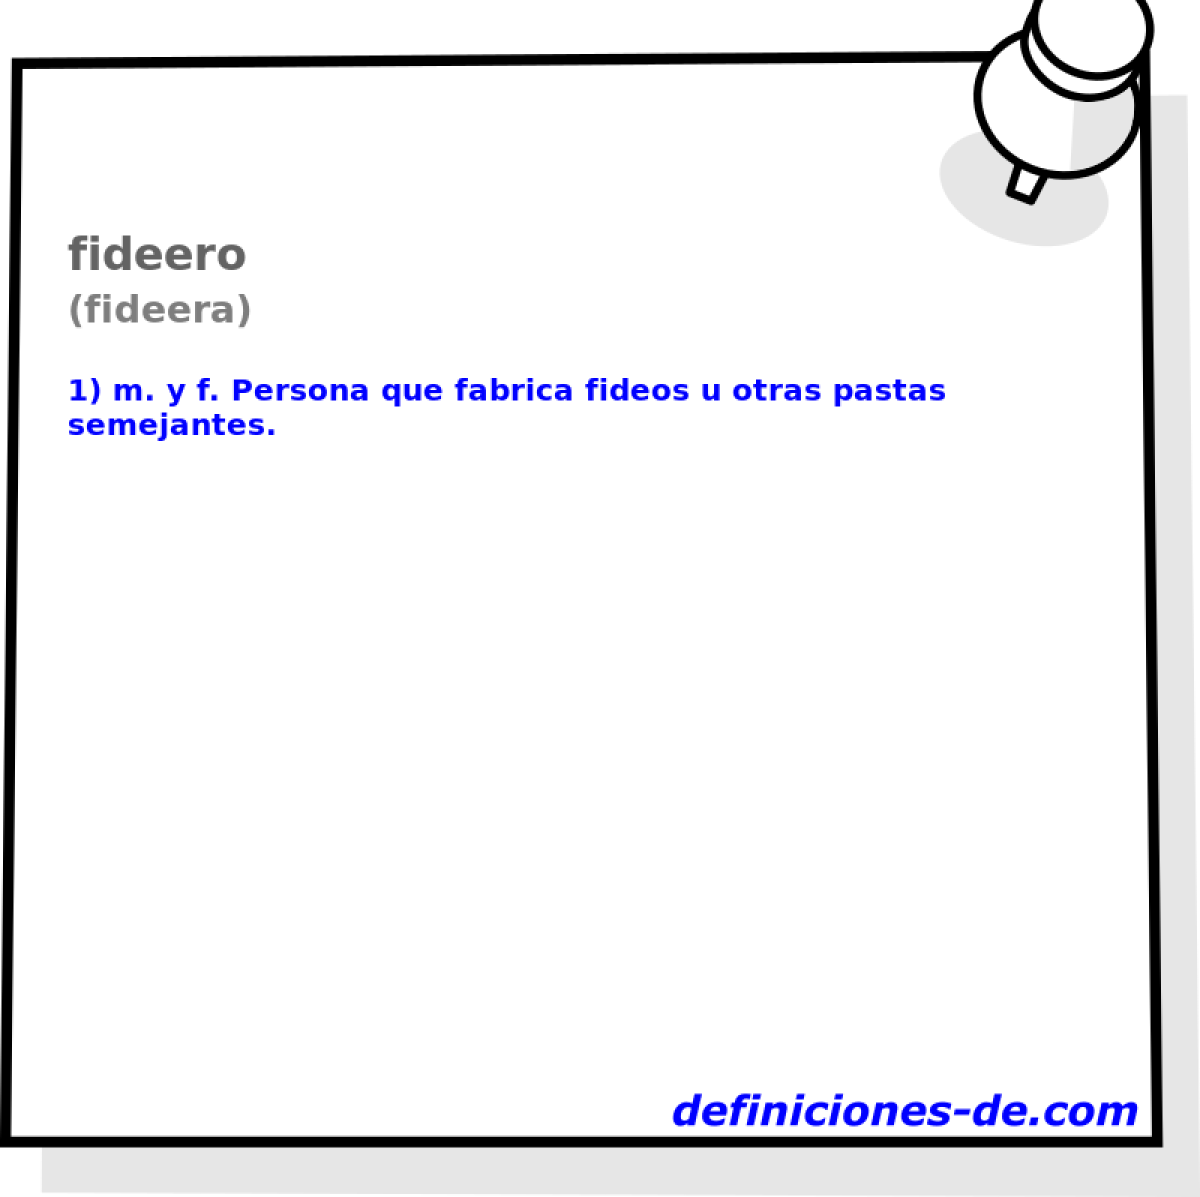 fideero (fideera)